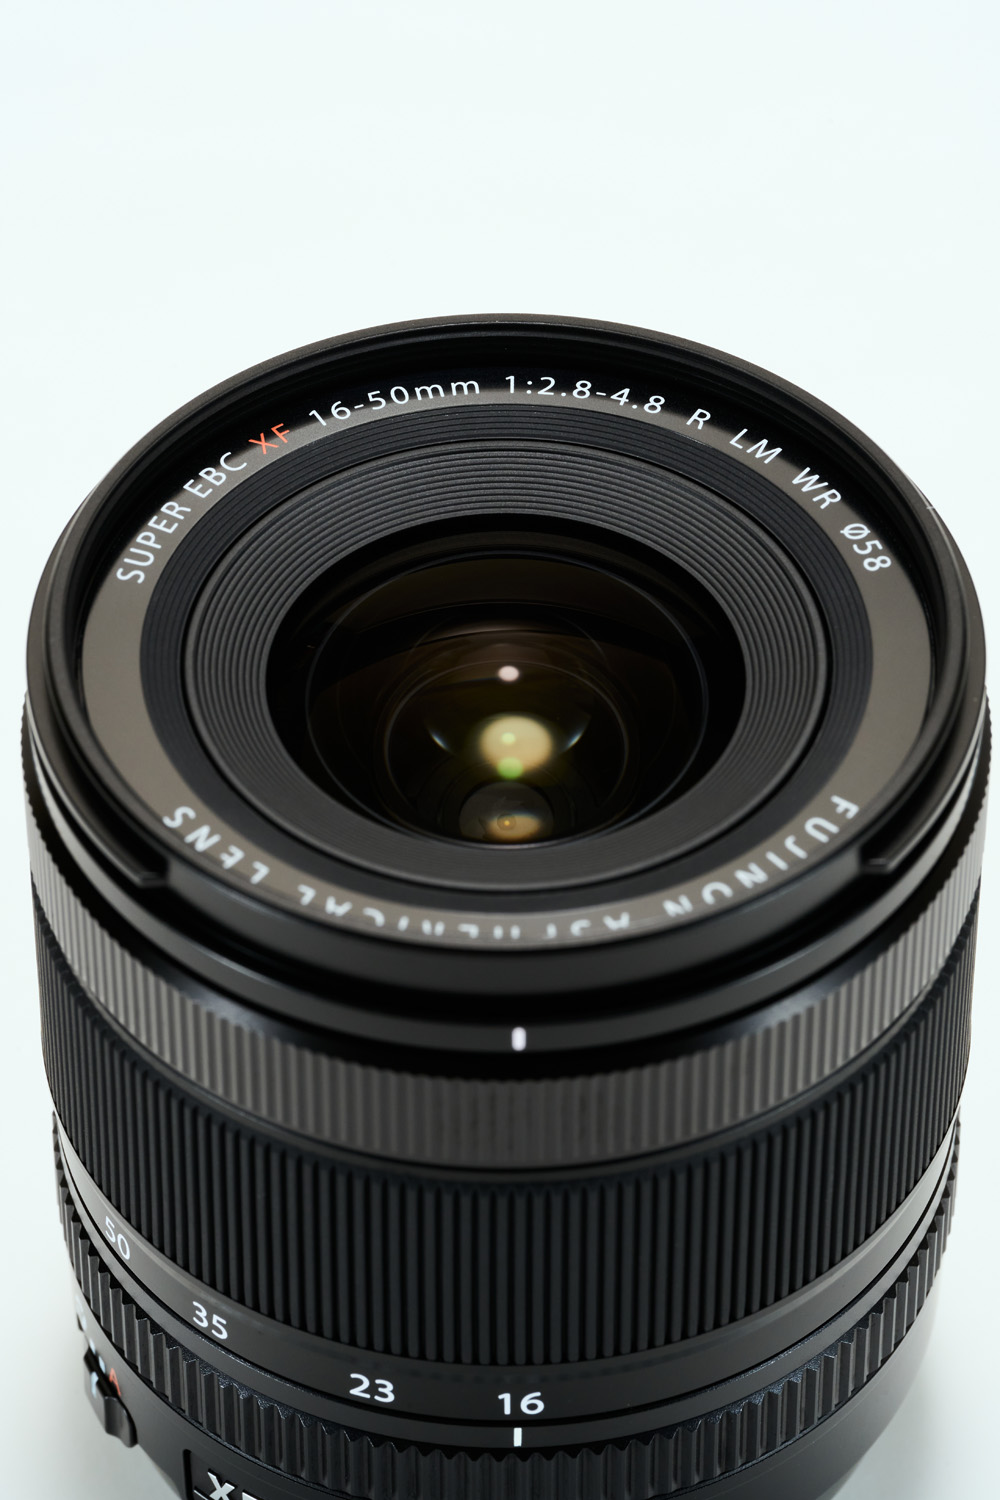 Снимок продукта с объективом Fujinon XF16-50 мм на белом фоне